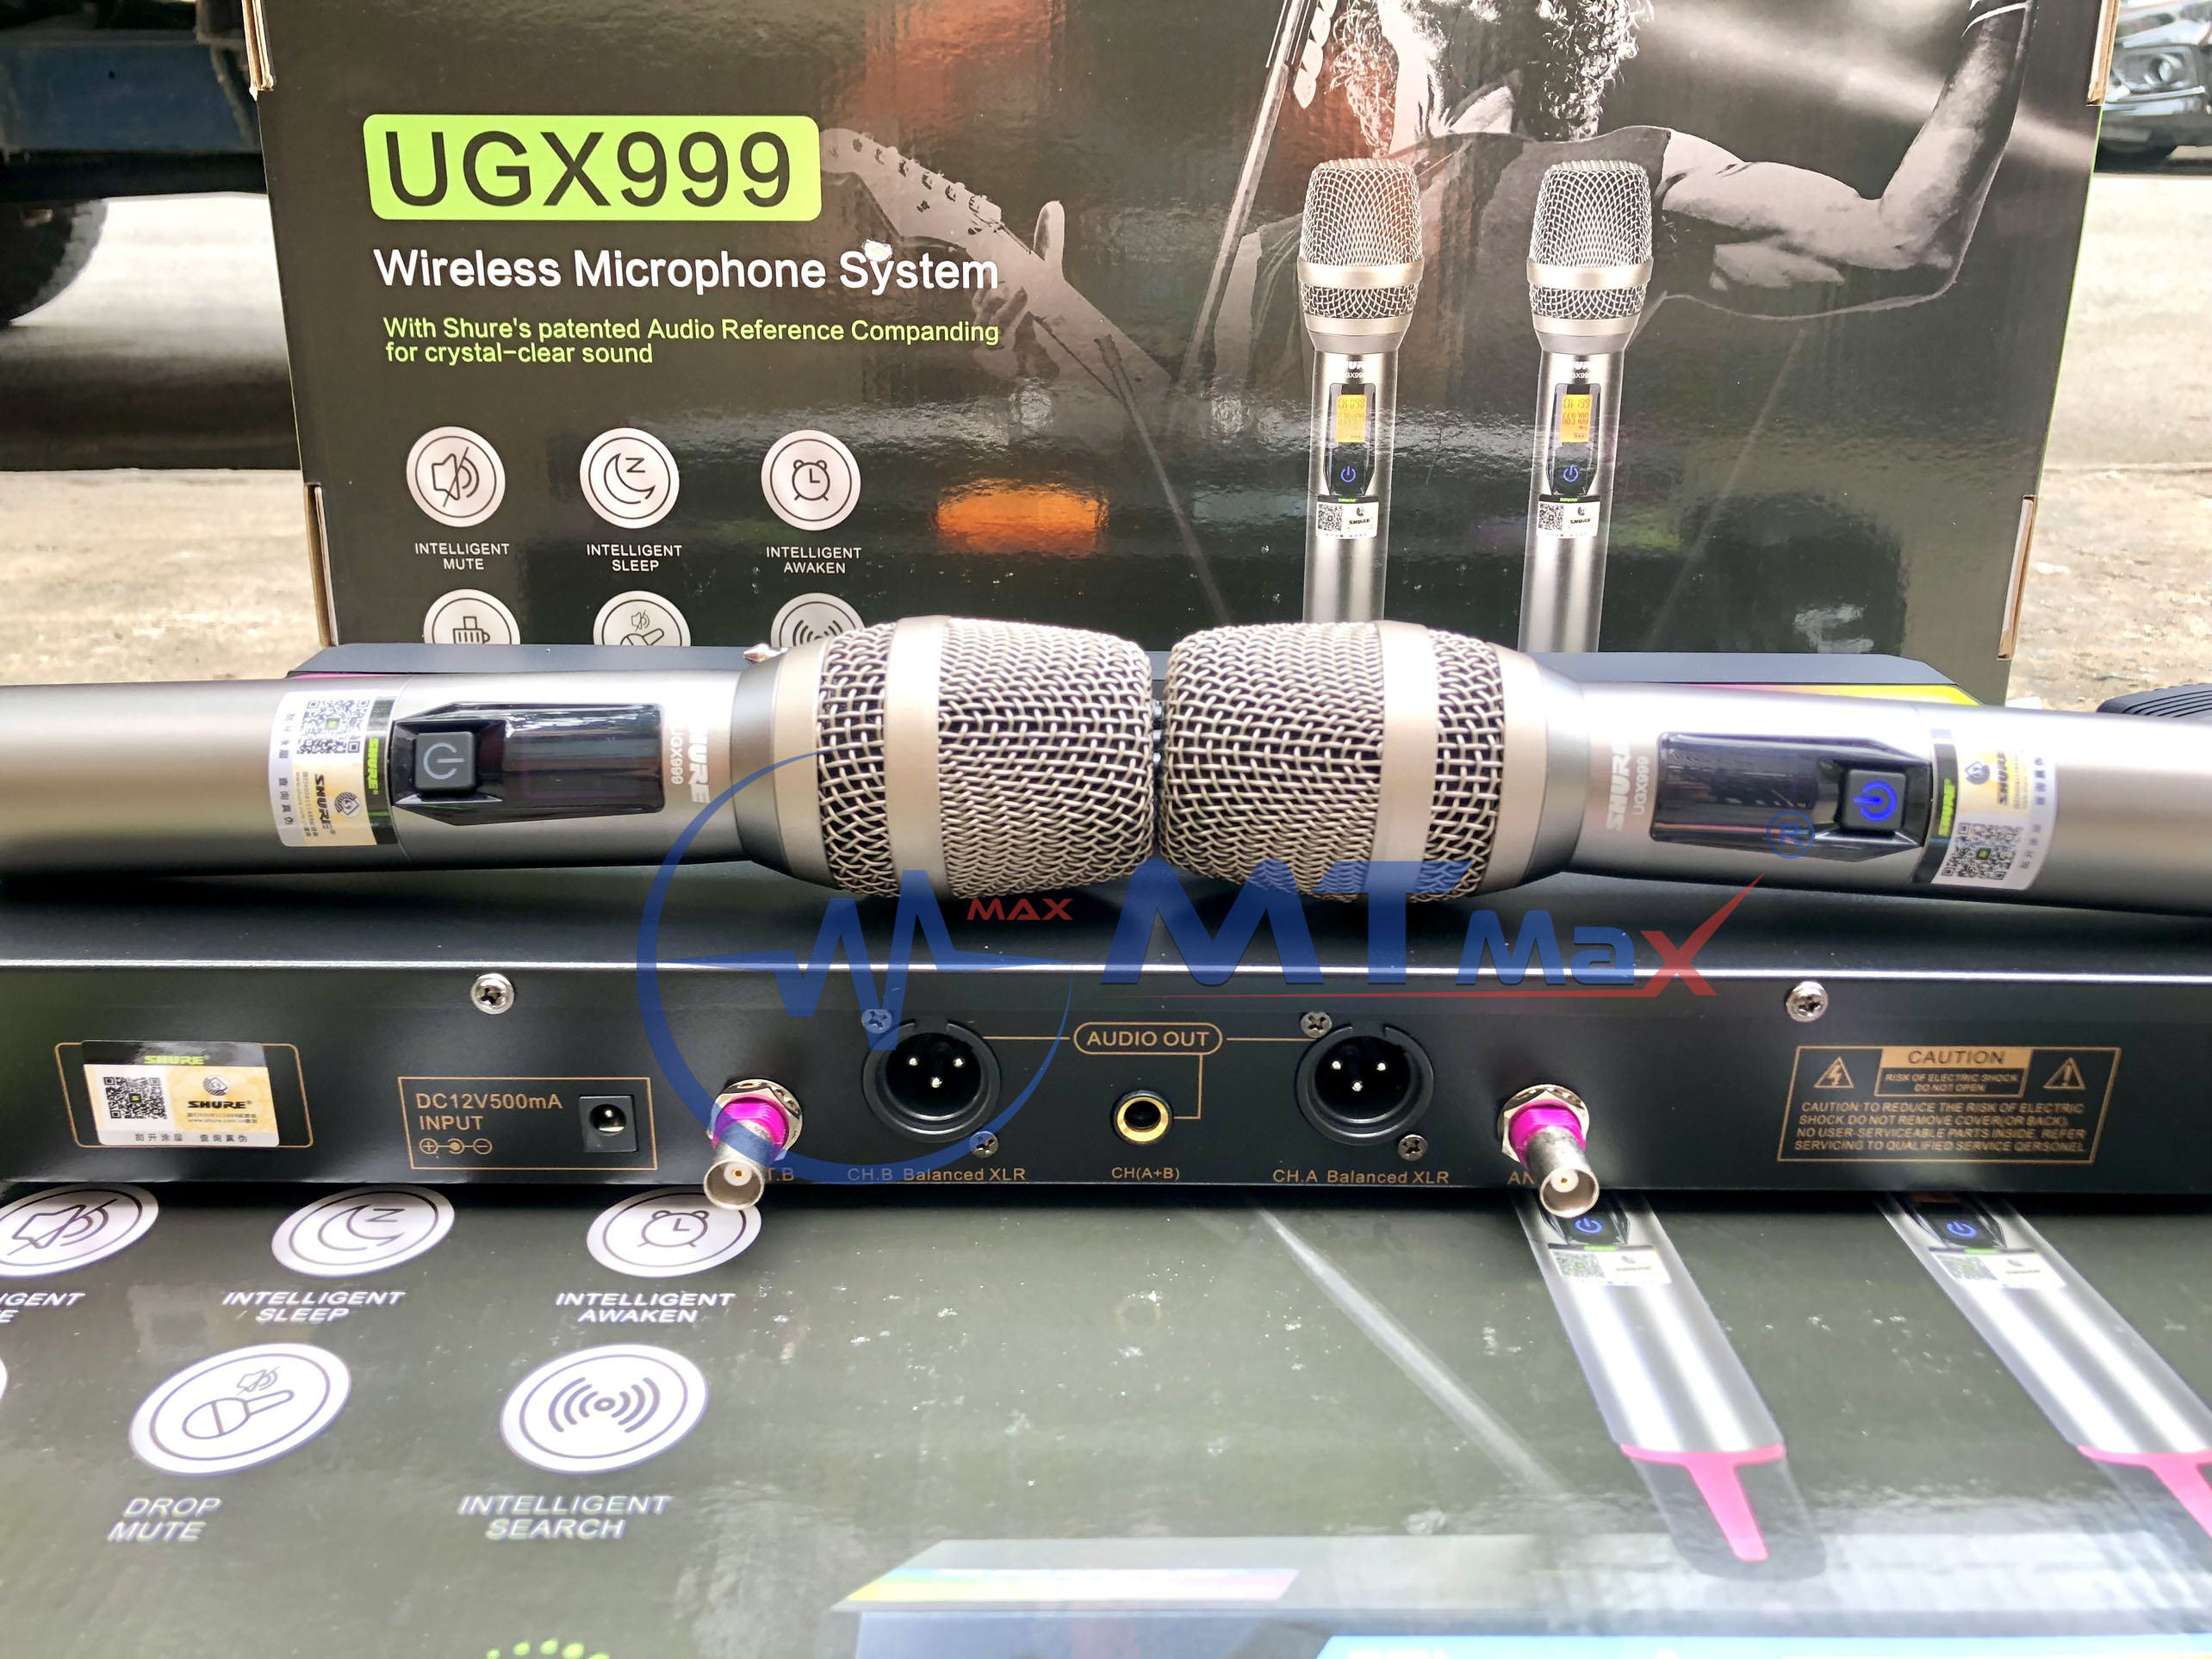 Micro không dây Shure UGX999 - Mic karaoke gia đình, sân khấu - Độ nhạy cao, bắt sóng xa, chống hú rít - Thiết kế sang trọng, bắt mắt -  Dễ dàng phối ghép với các thiết bị âm thanh khác - Hàng nhập khẩu loại I